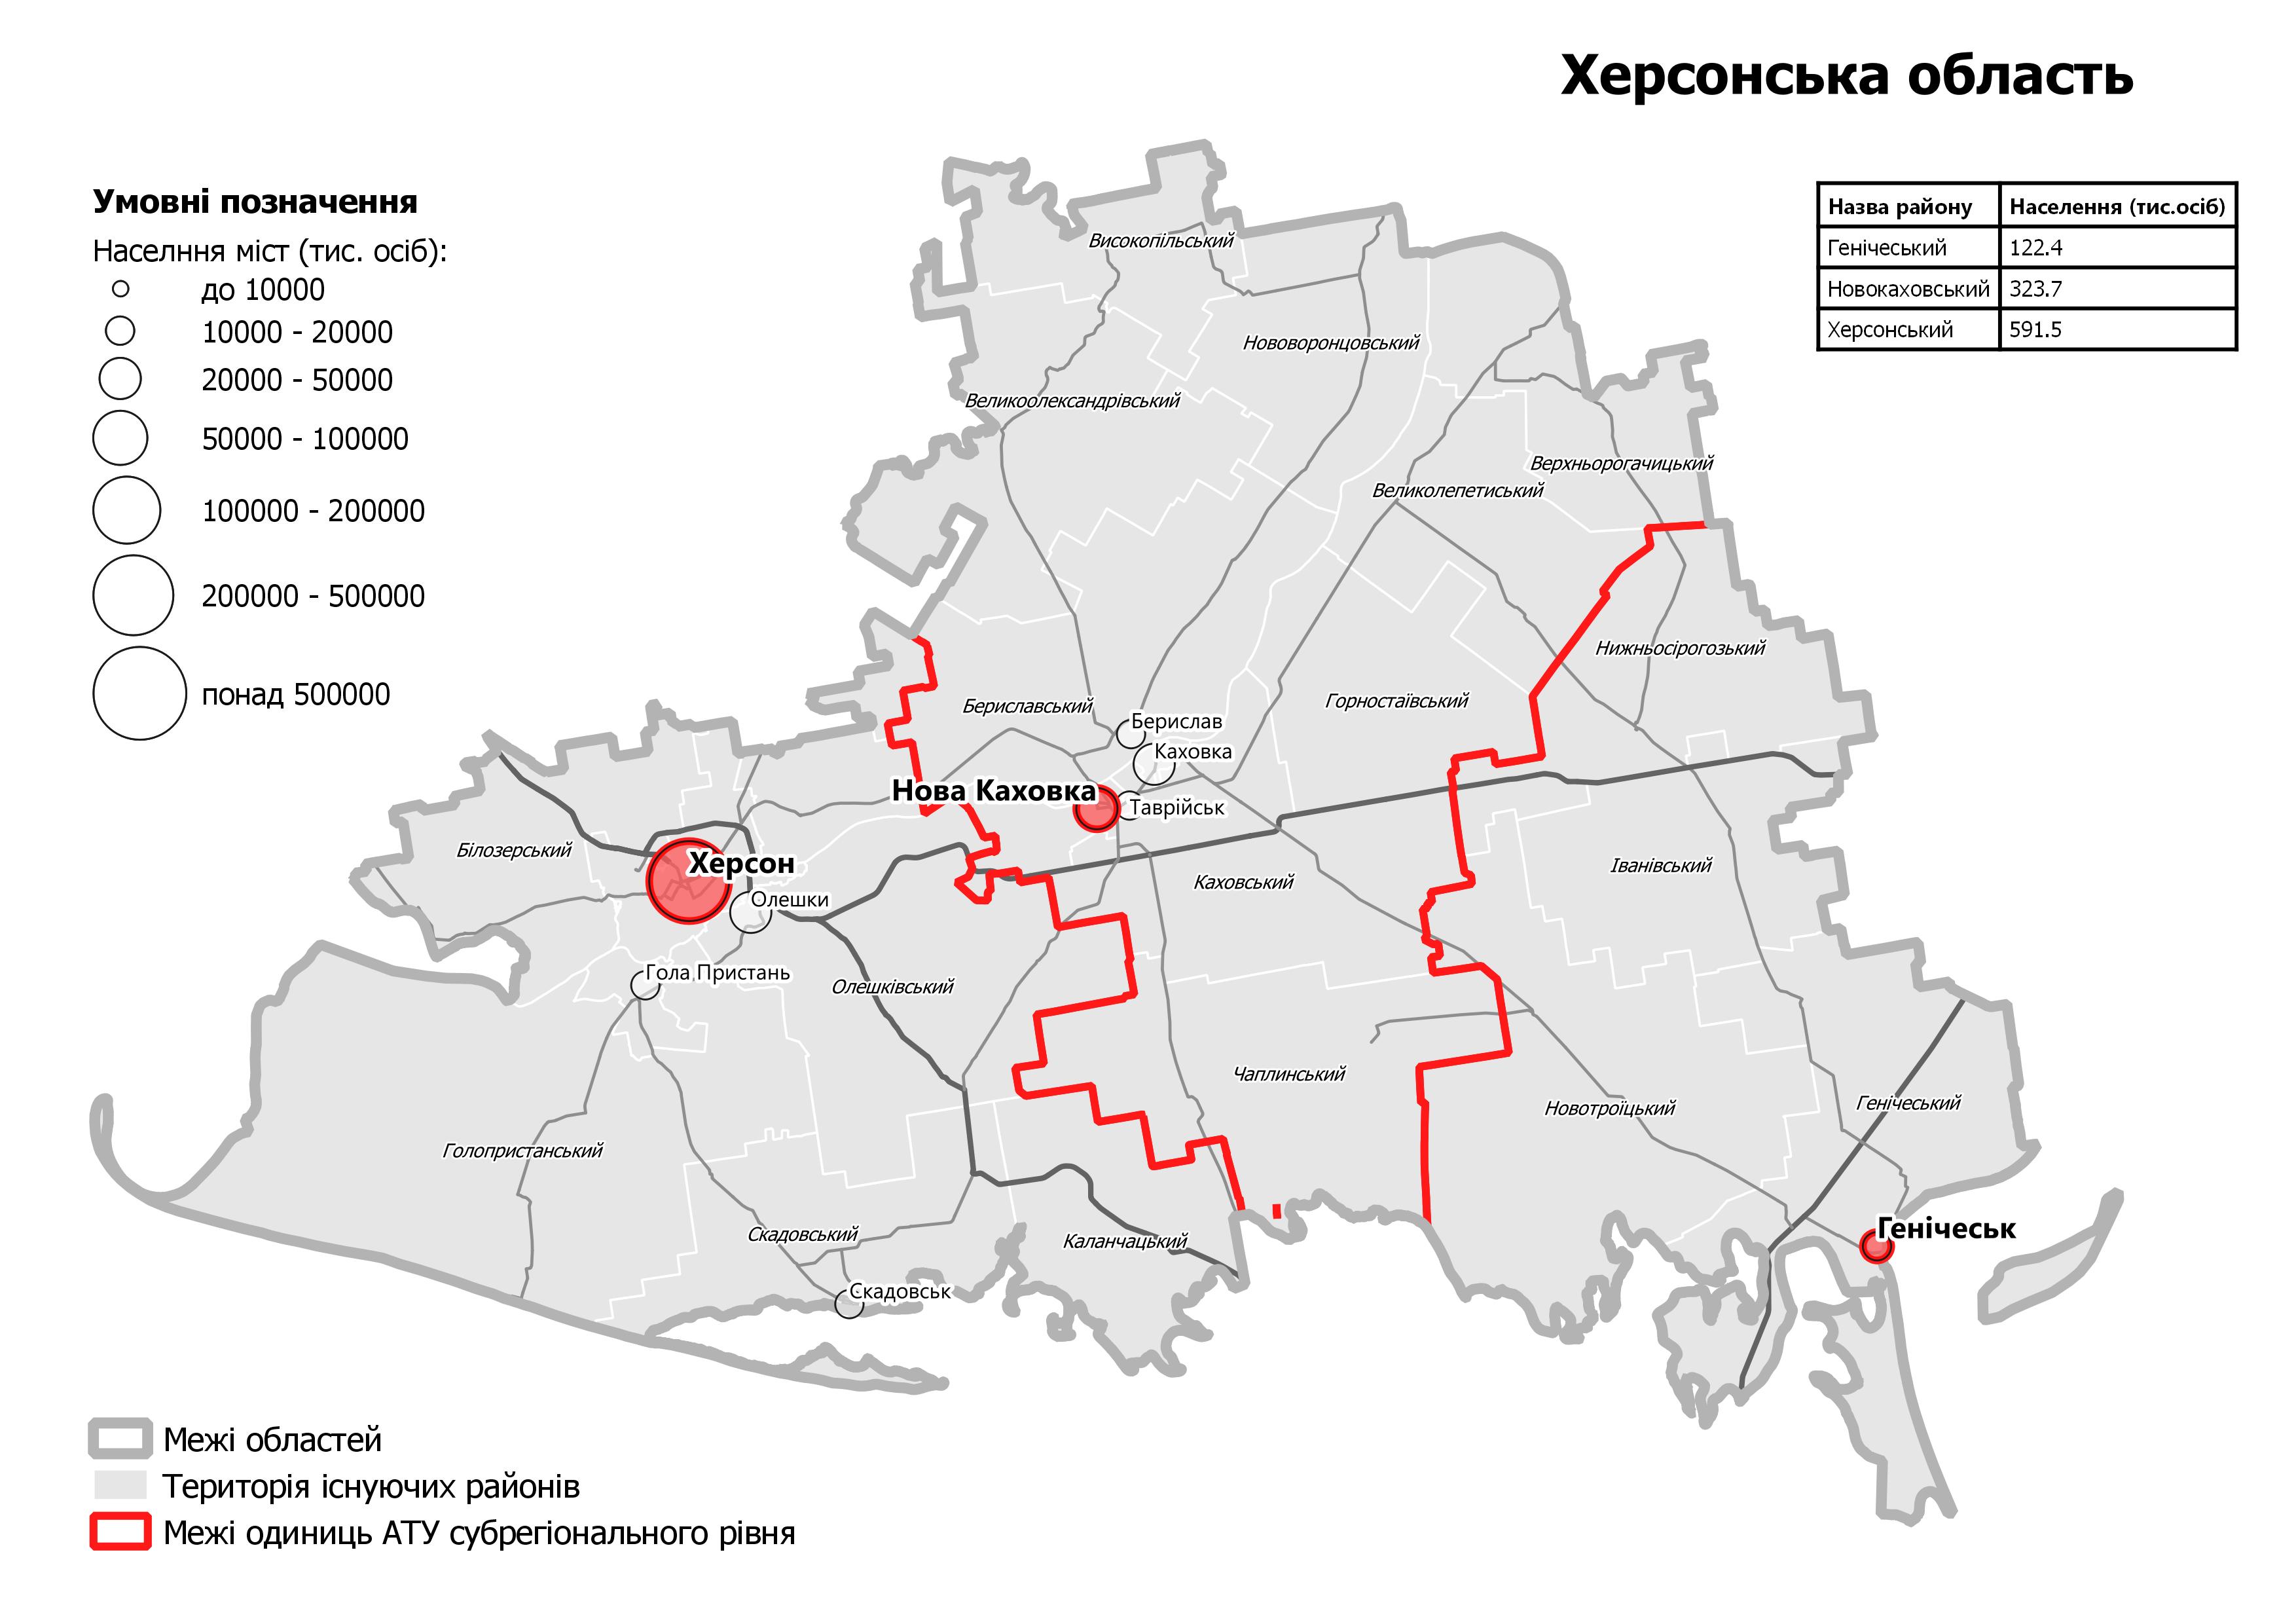 Мінрегіон оприлюднив проекти майбутніх районів в Україні. Ще можливі зміни